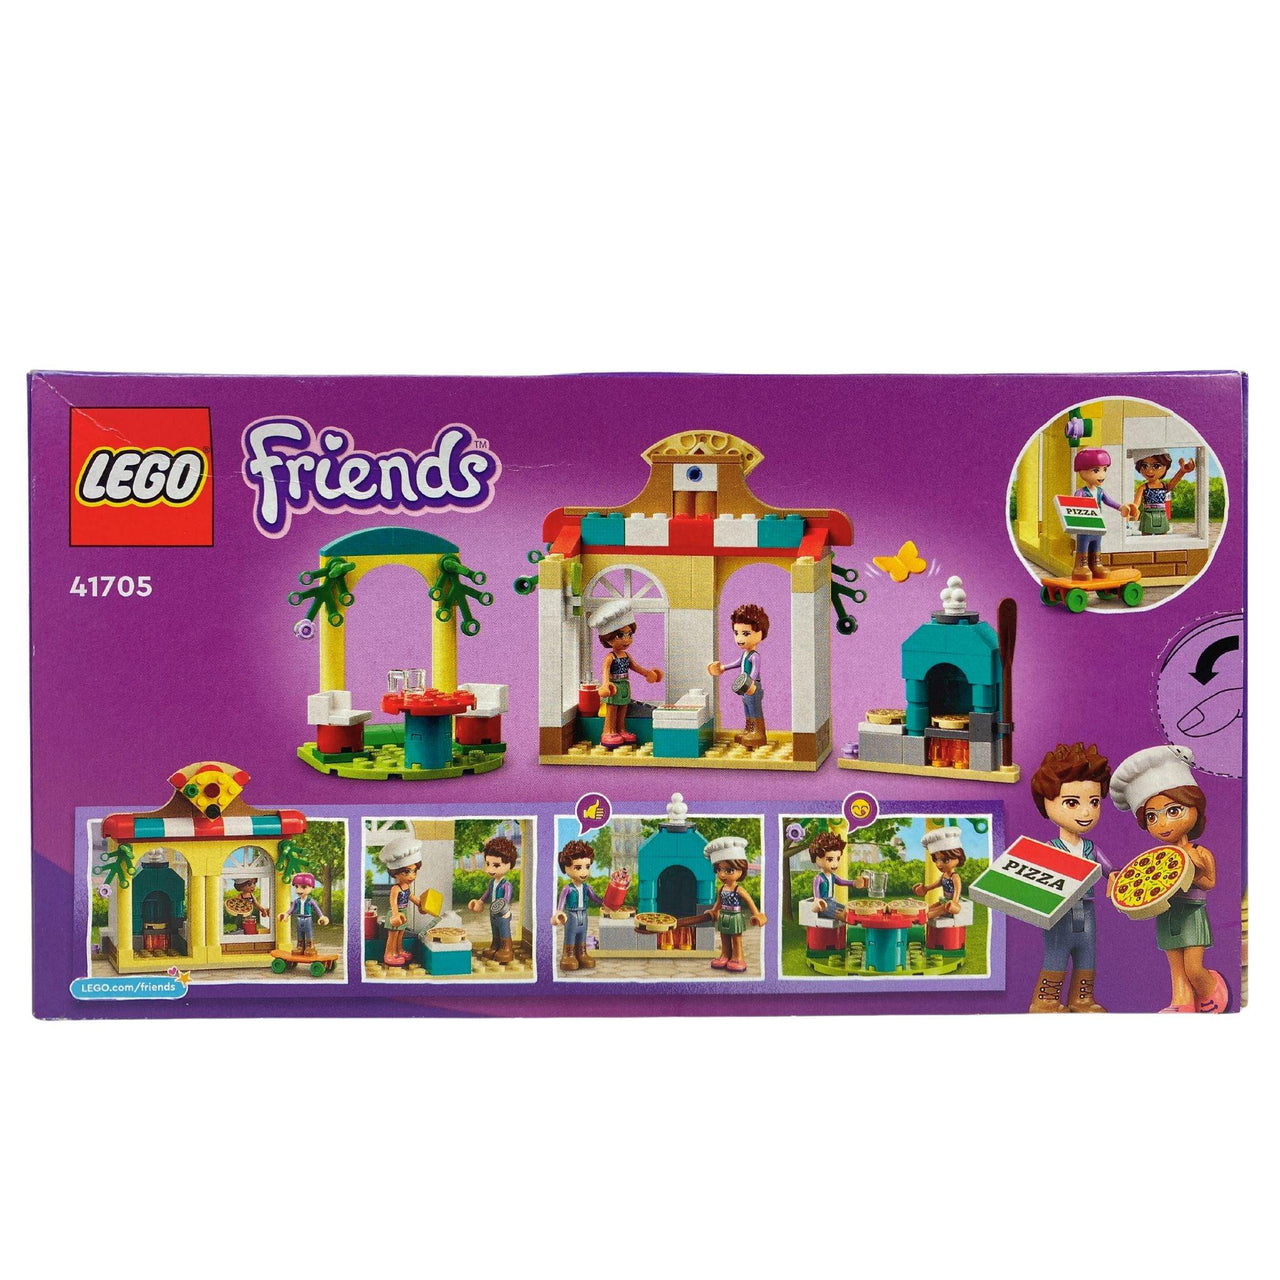 LEGO Friends 5+ 41705 Heartlake City Pizzeria 144 Pcs Building Toy (60 Pcs Lot) - Discount Wholesalers Inc